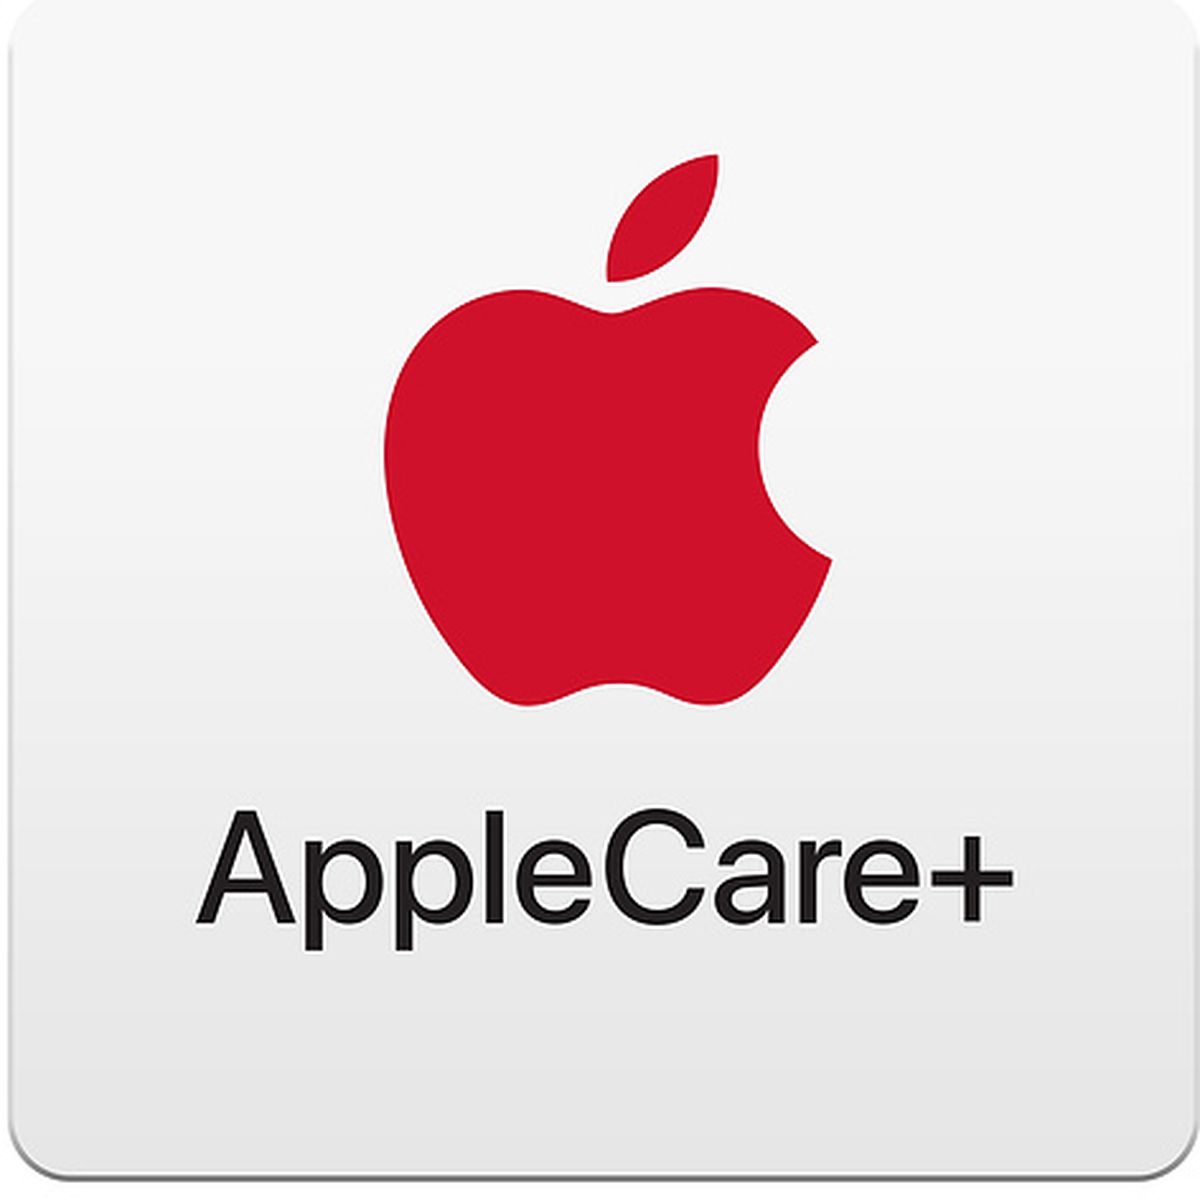 AppleCare+ for iPad Air